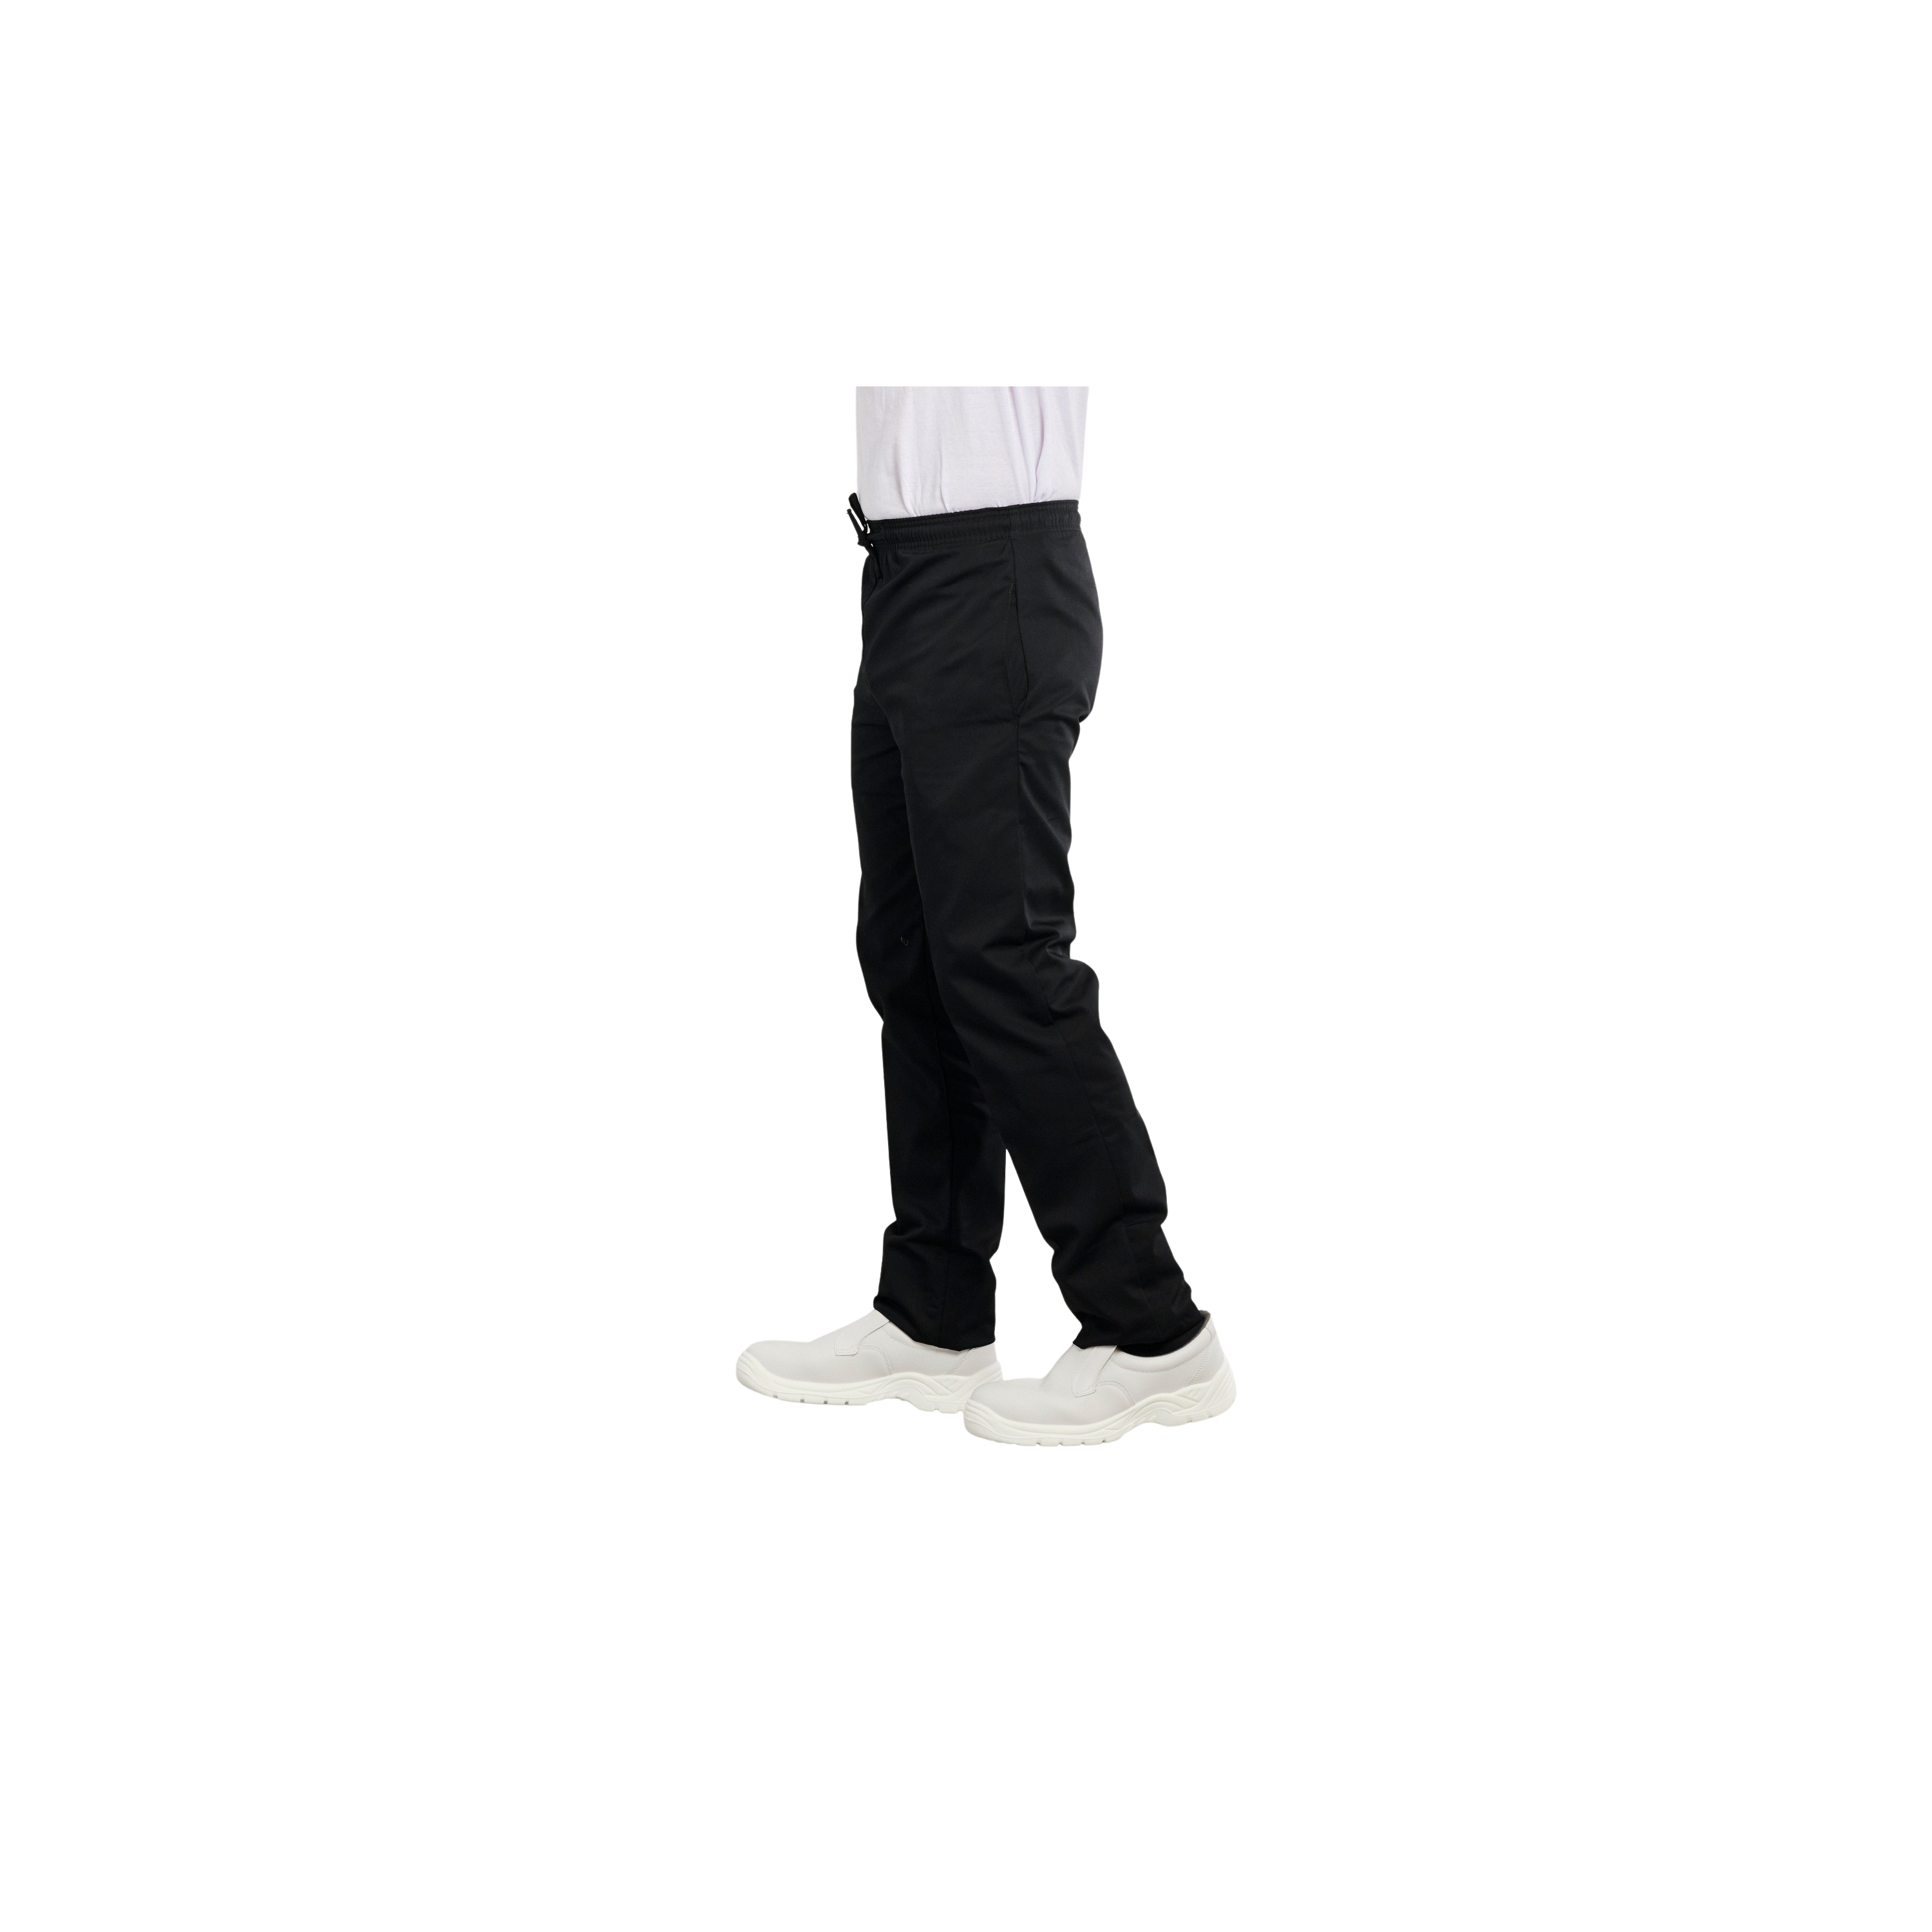 Pantalon thermique à ourlet ajustable - Hyba, Régulier